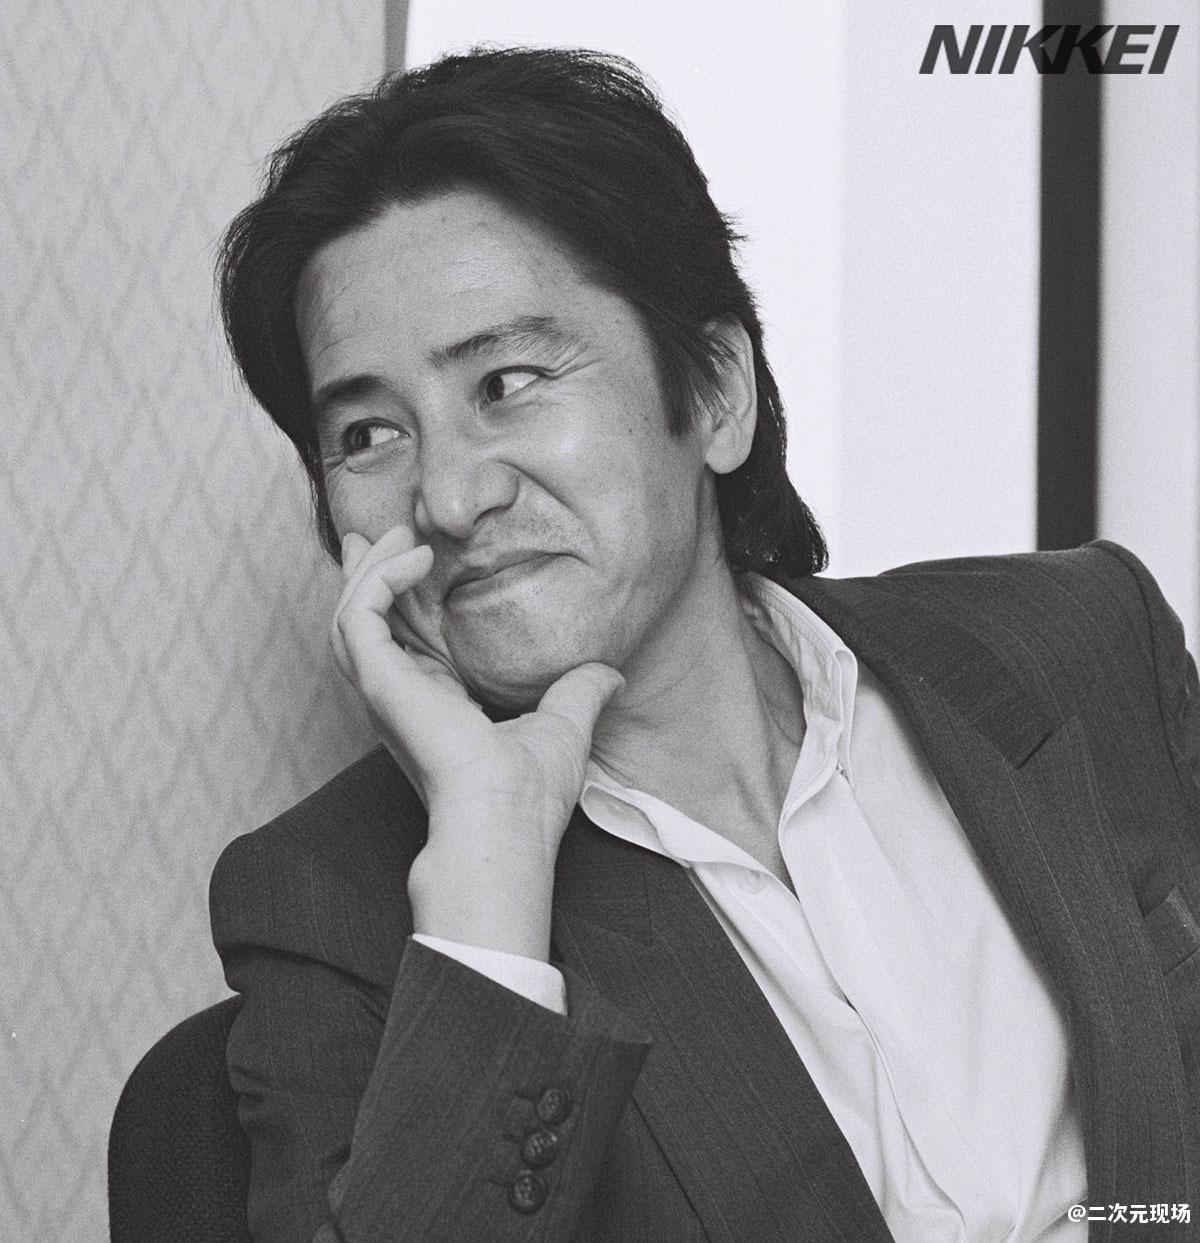 再见了 古畑任三郎 日本知名男演员田村正和因病过世享年77岁 二次元现场